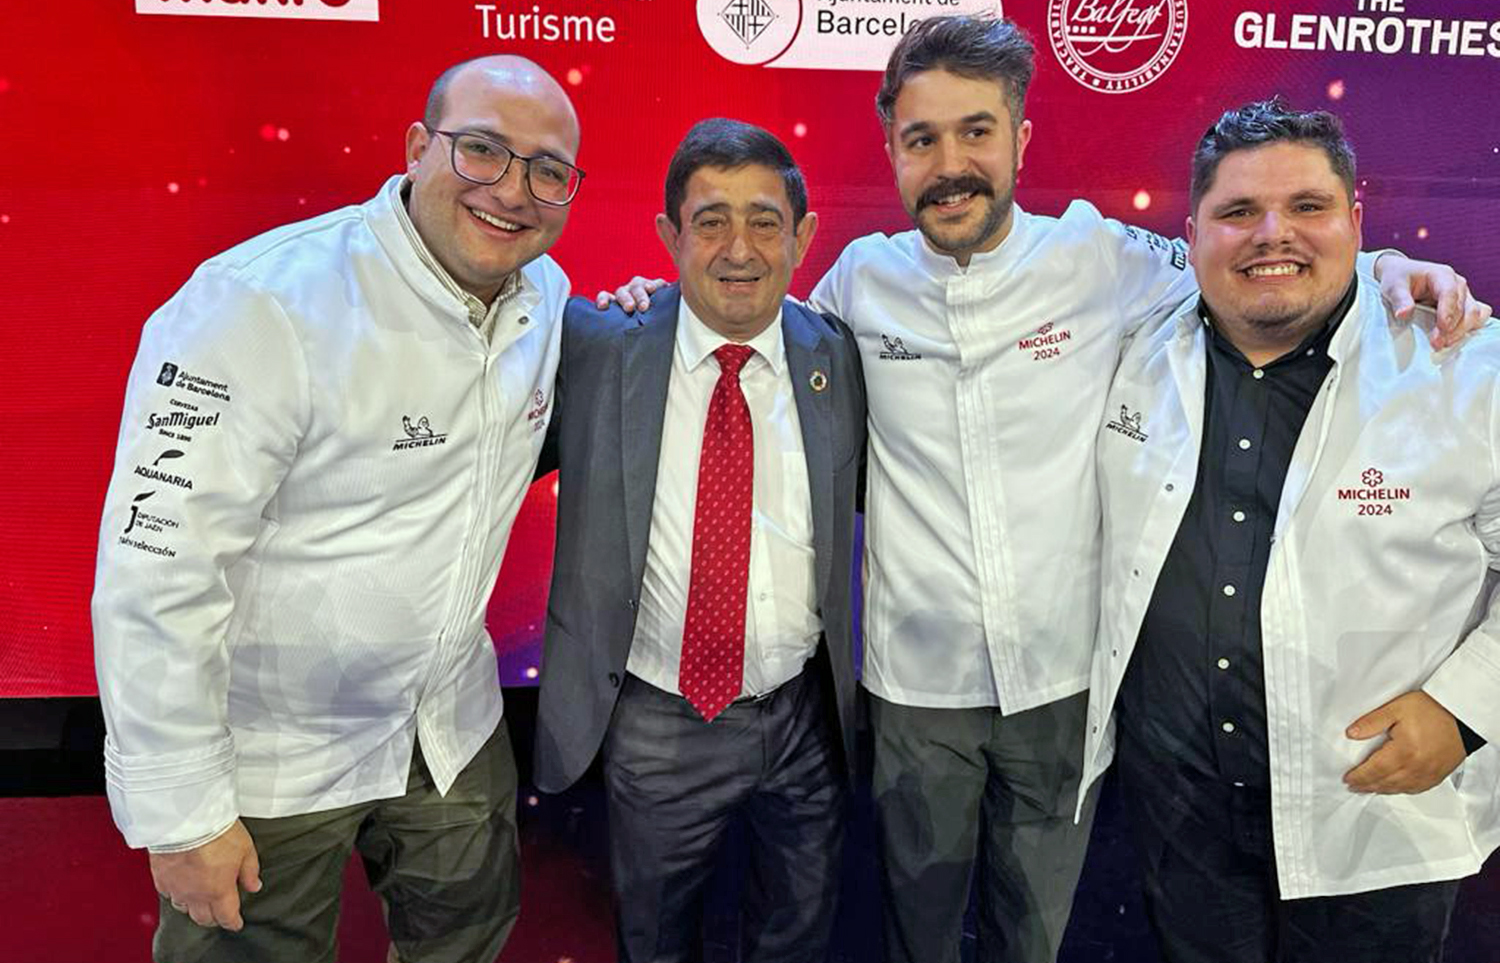 La provincia de Jaén suma 3 nuevas estrellas Michelín para los restaurantes de la capital Malak y Radis y para el Vandelvira de Baeza